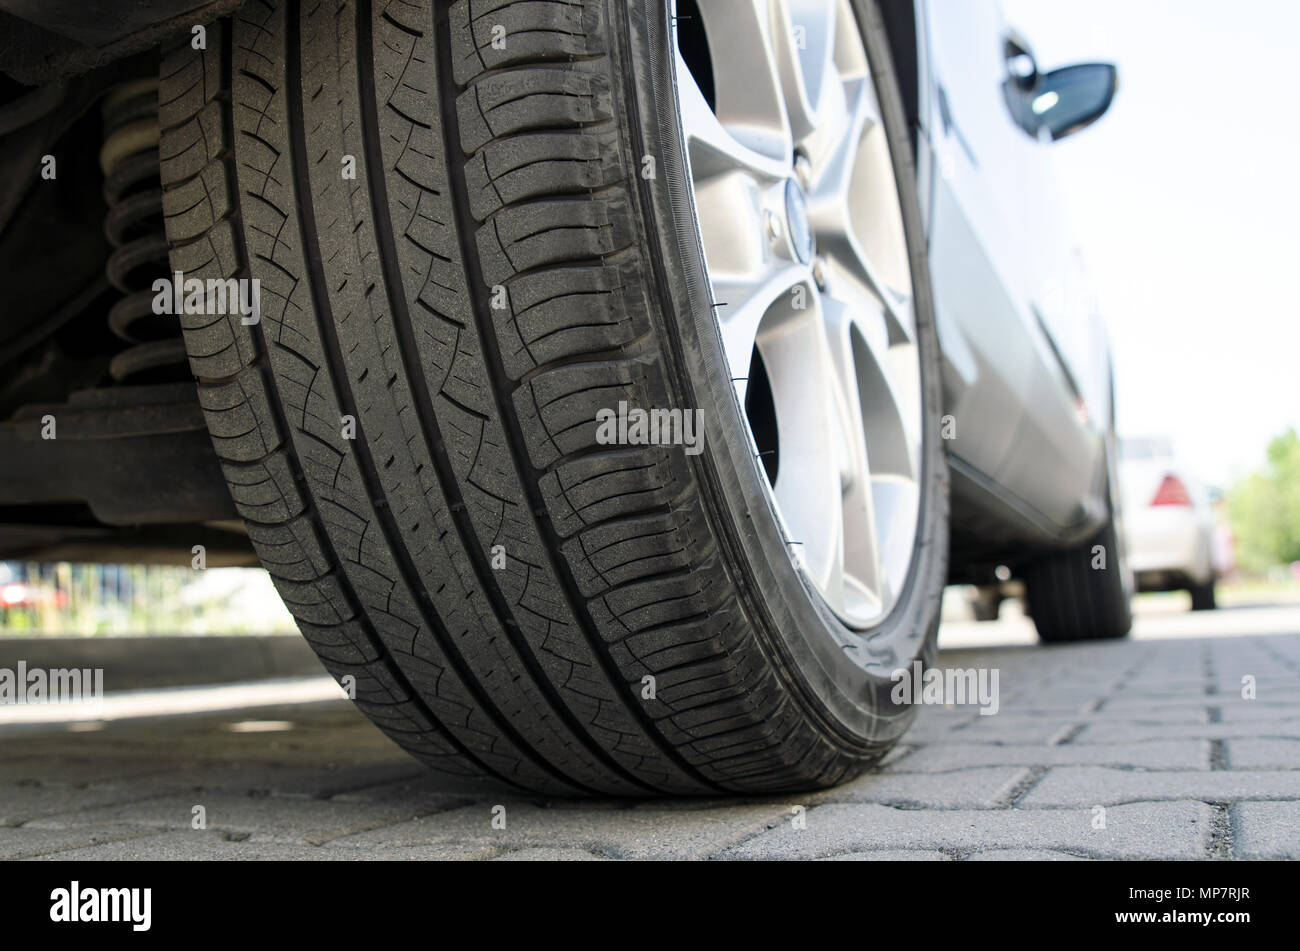 Location de pneu toutes saisons close up, voiture en stationnement. Low angle shot, roue auto avec jante aluminium concept Banque D'Images